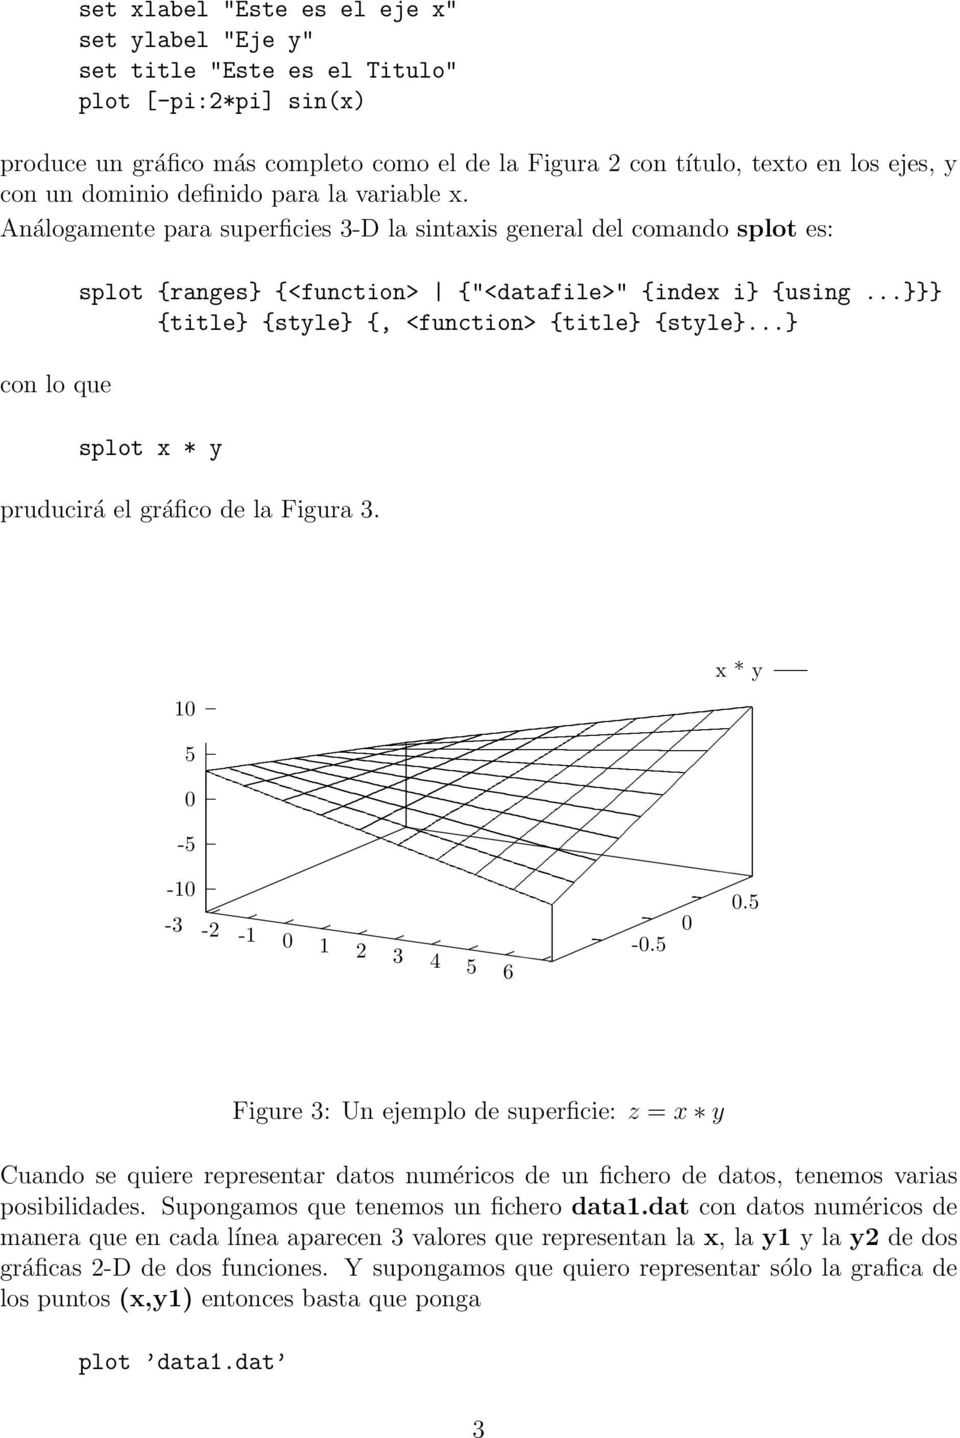 ..}}} {title} {style} {, <function> {title} {style}...} splot x * y pruducirá el gráfico de la Figura 3. x * y - - -3-2 - 2 3 4 6 -.